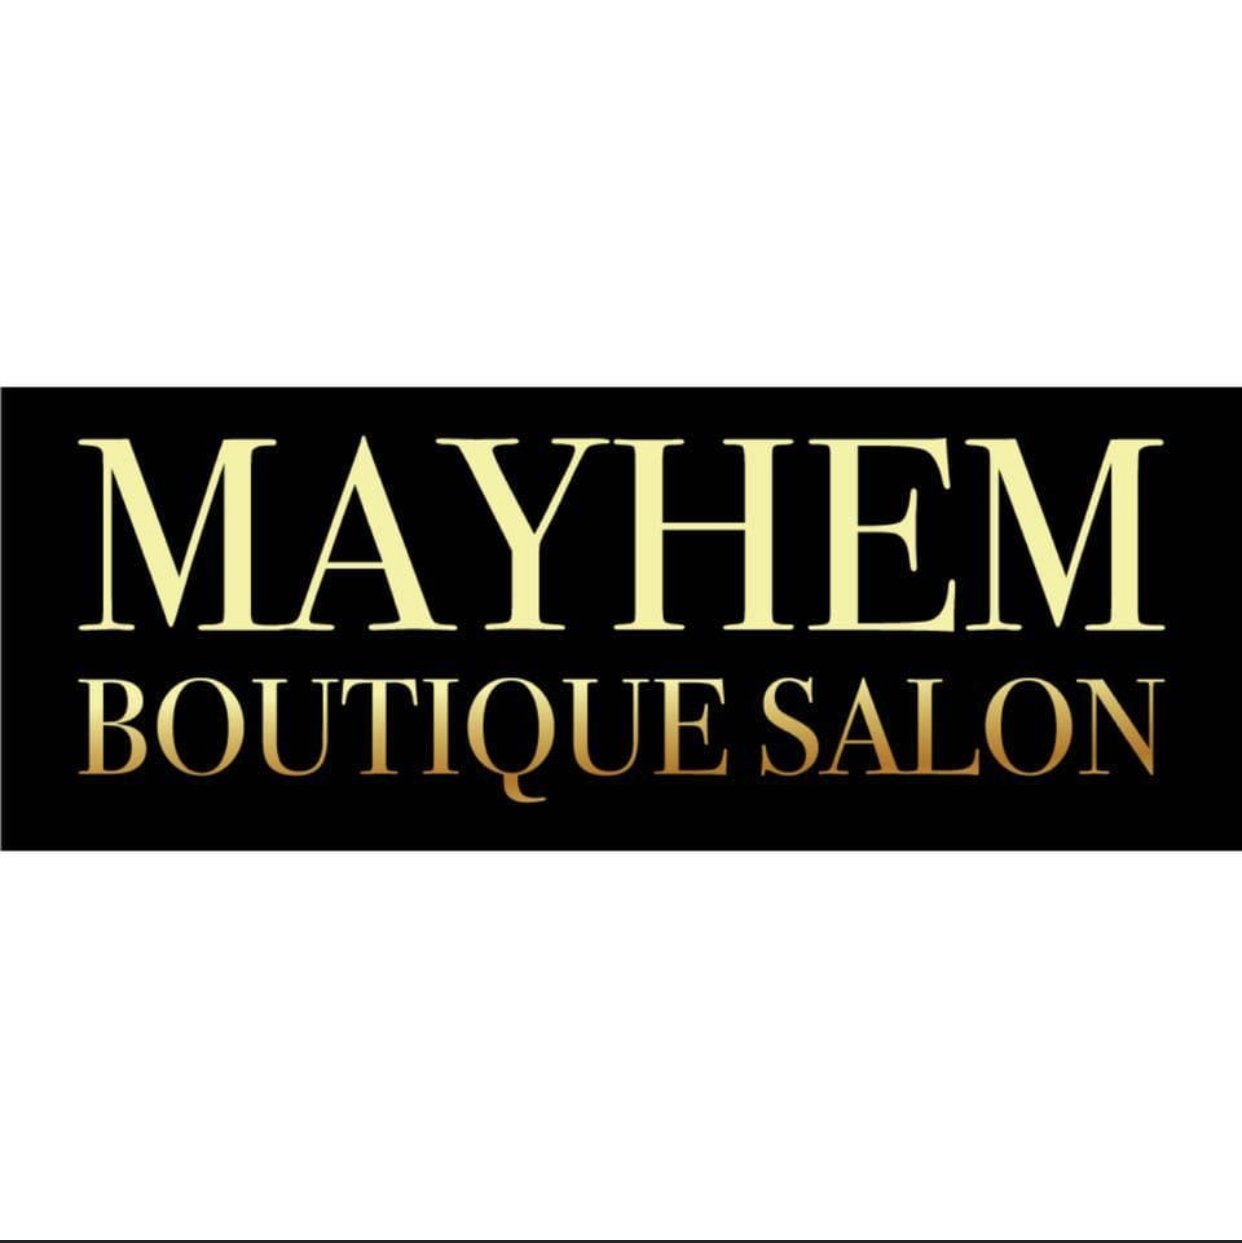 Mayhem Boutique Salon